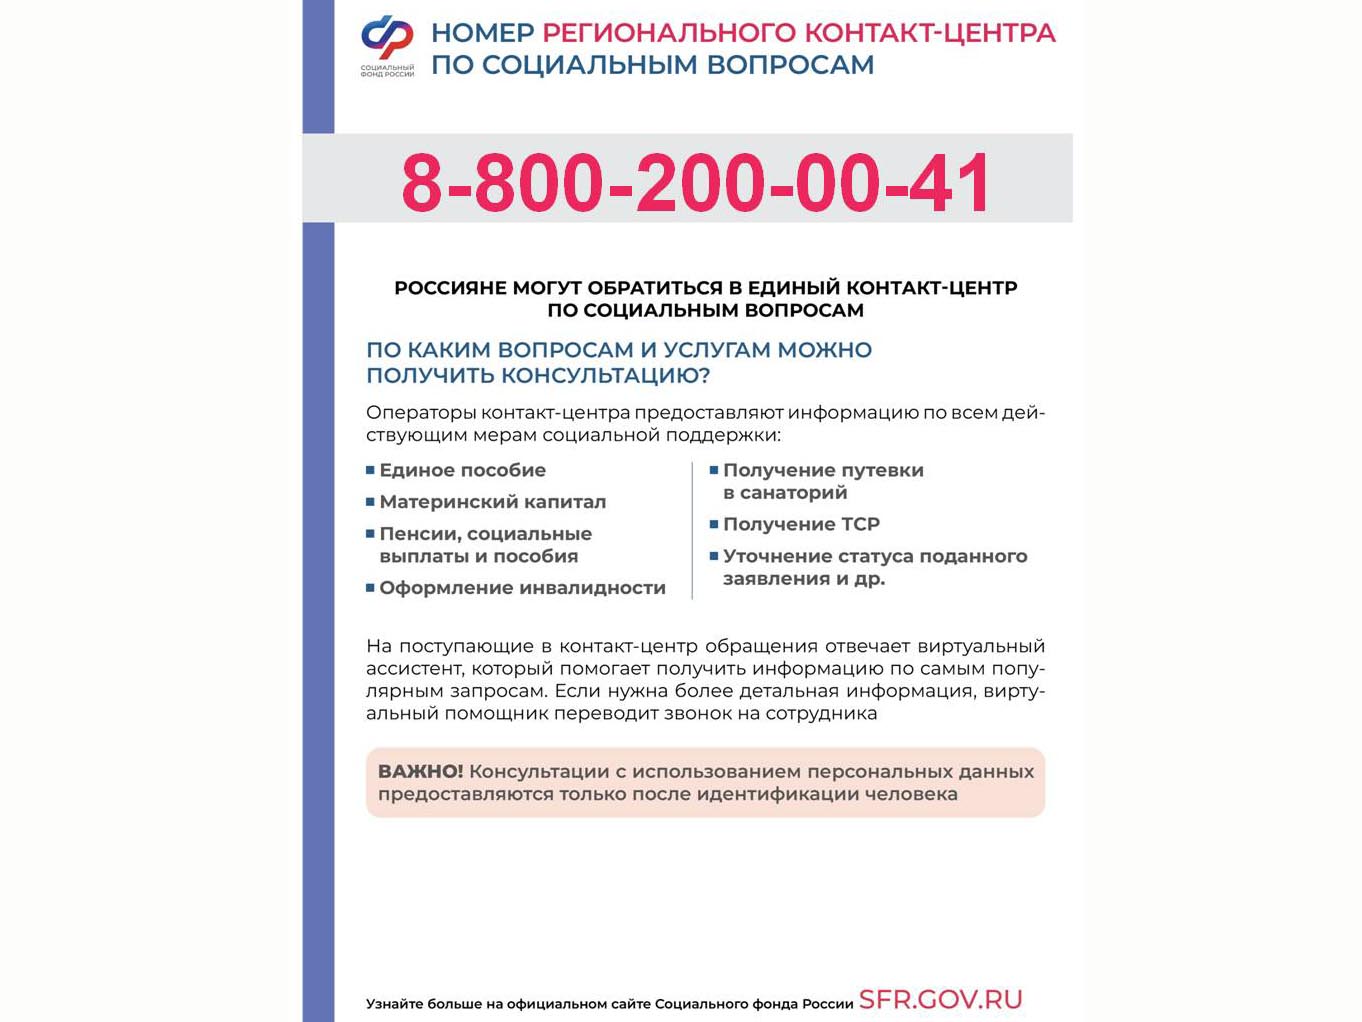 Изменился телефон контакт-центра Отделения Социального фонда по Вологодской области.